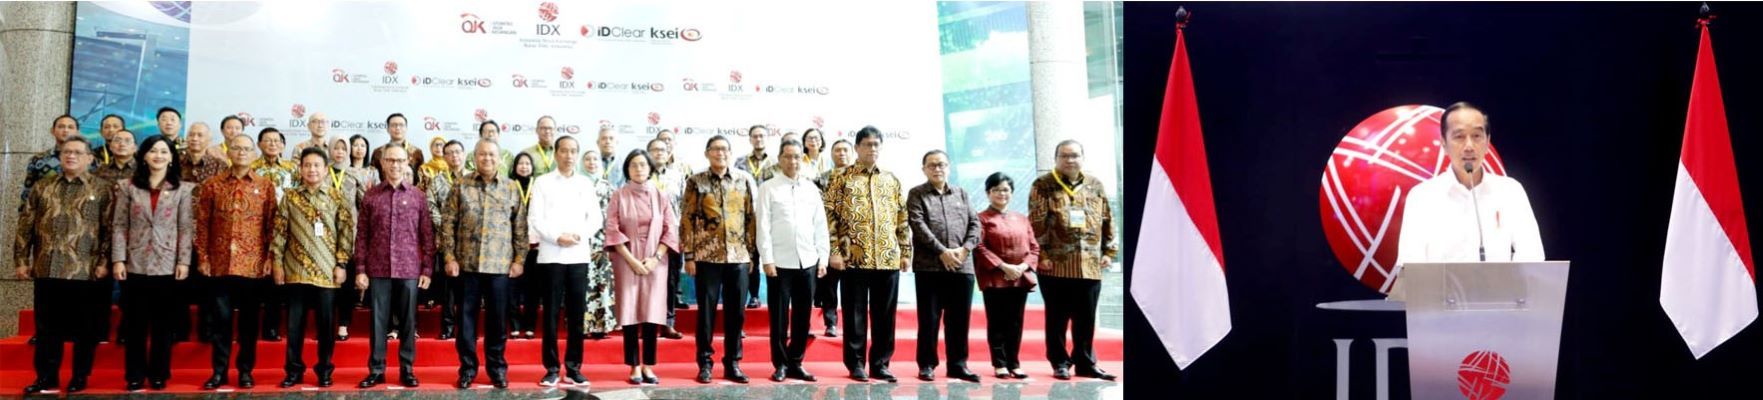 Pasar Modal Indonesia Siap Berkontribusi Terhadap Pertumbuhan Ekonomi Nasional 2023